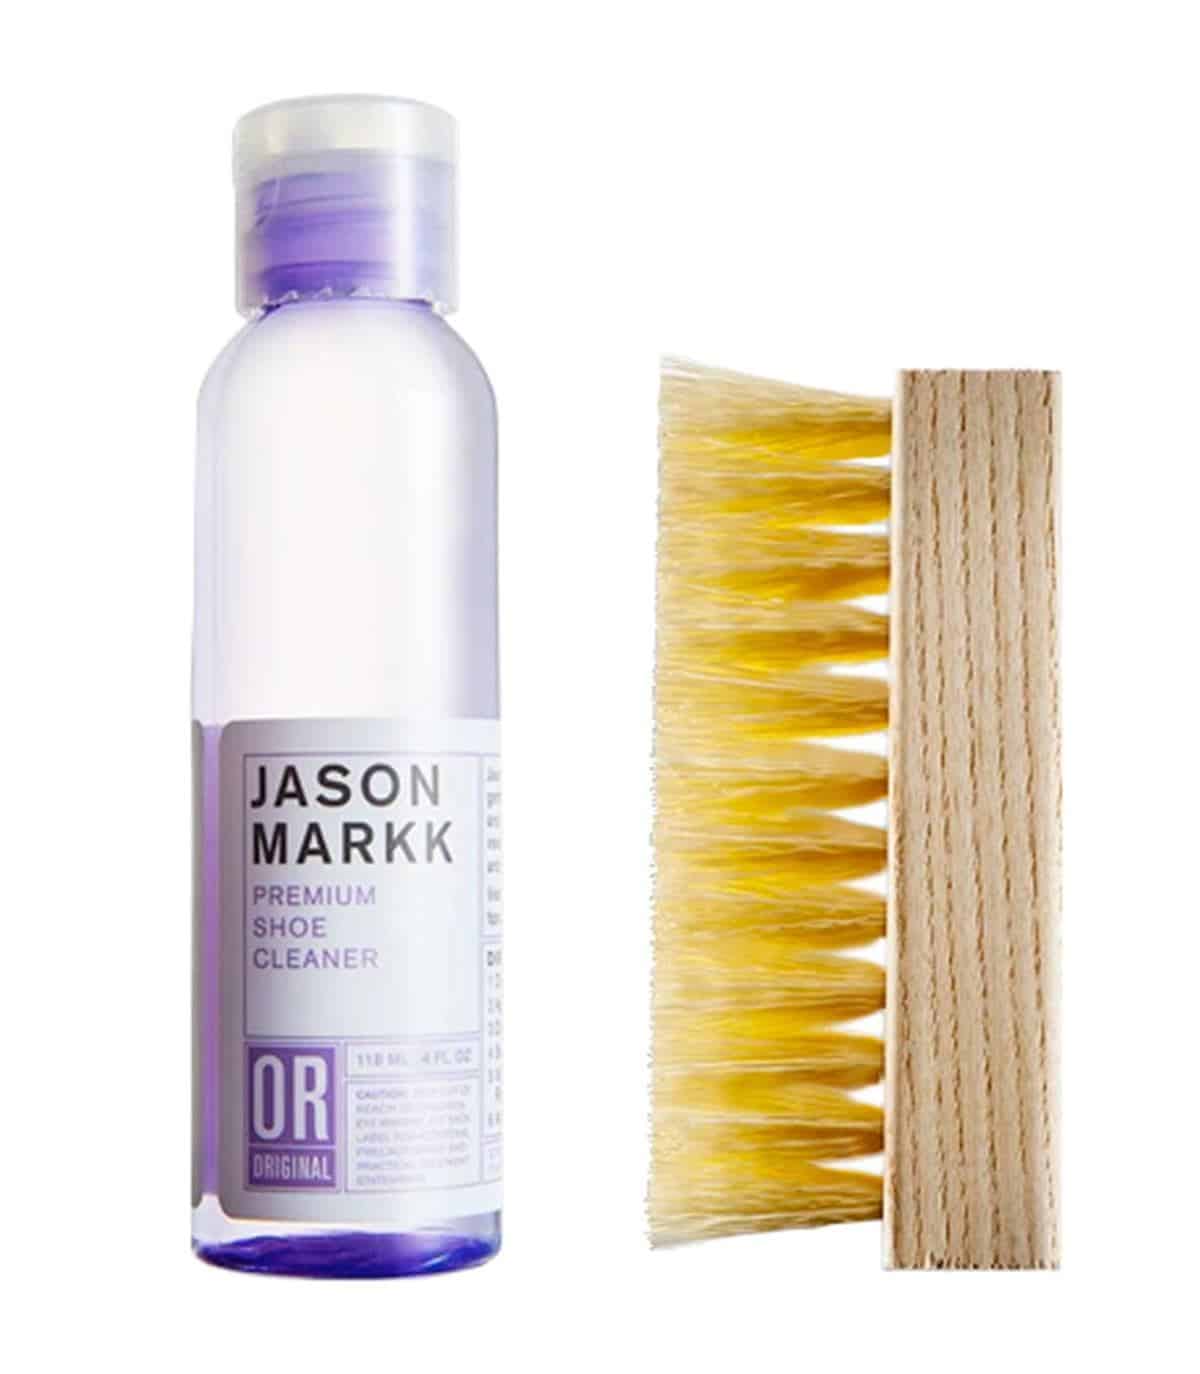 Jason Markk nổi tiếng là một trong những thương hiệu dung dịch vệ sinh giày tốt nhất hiện nay